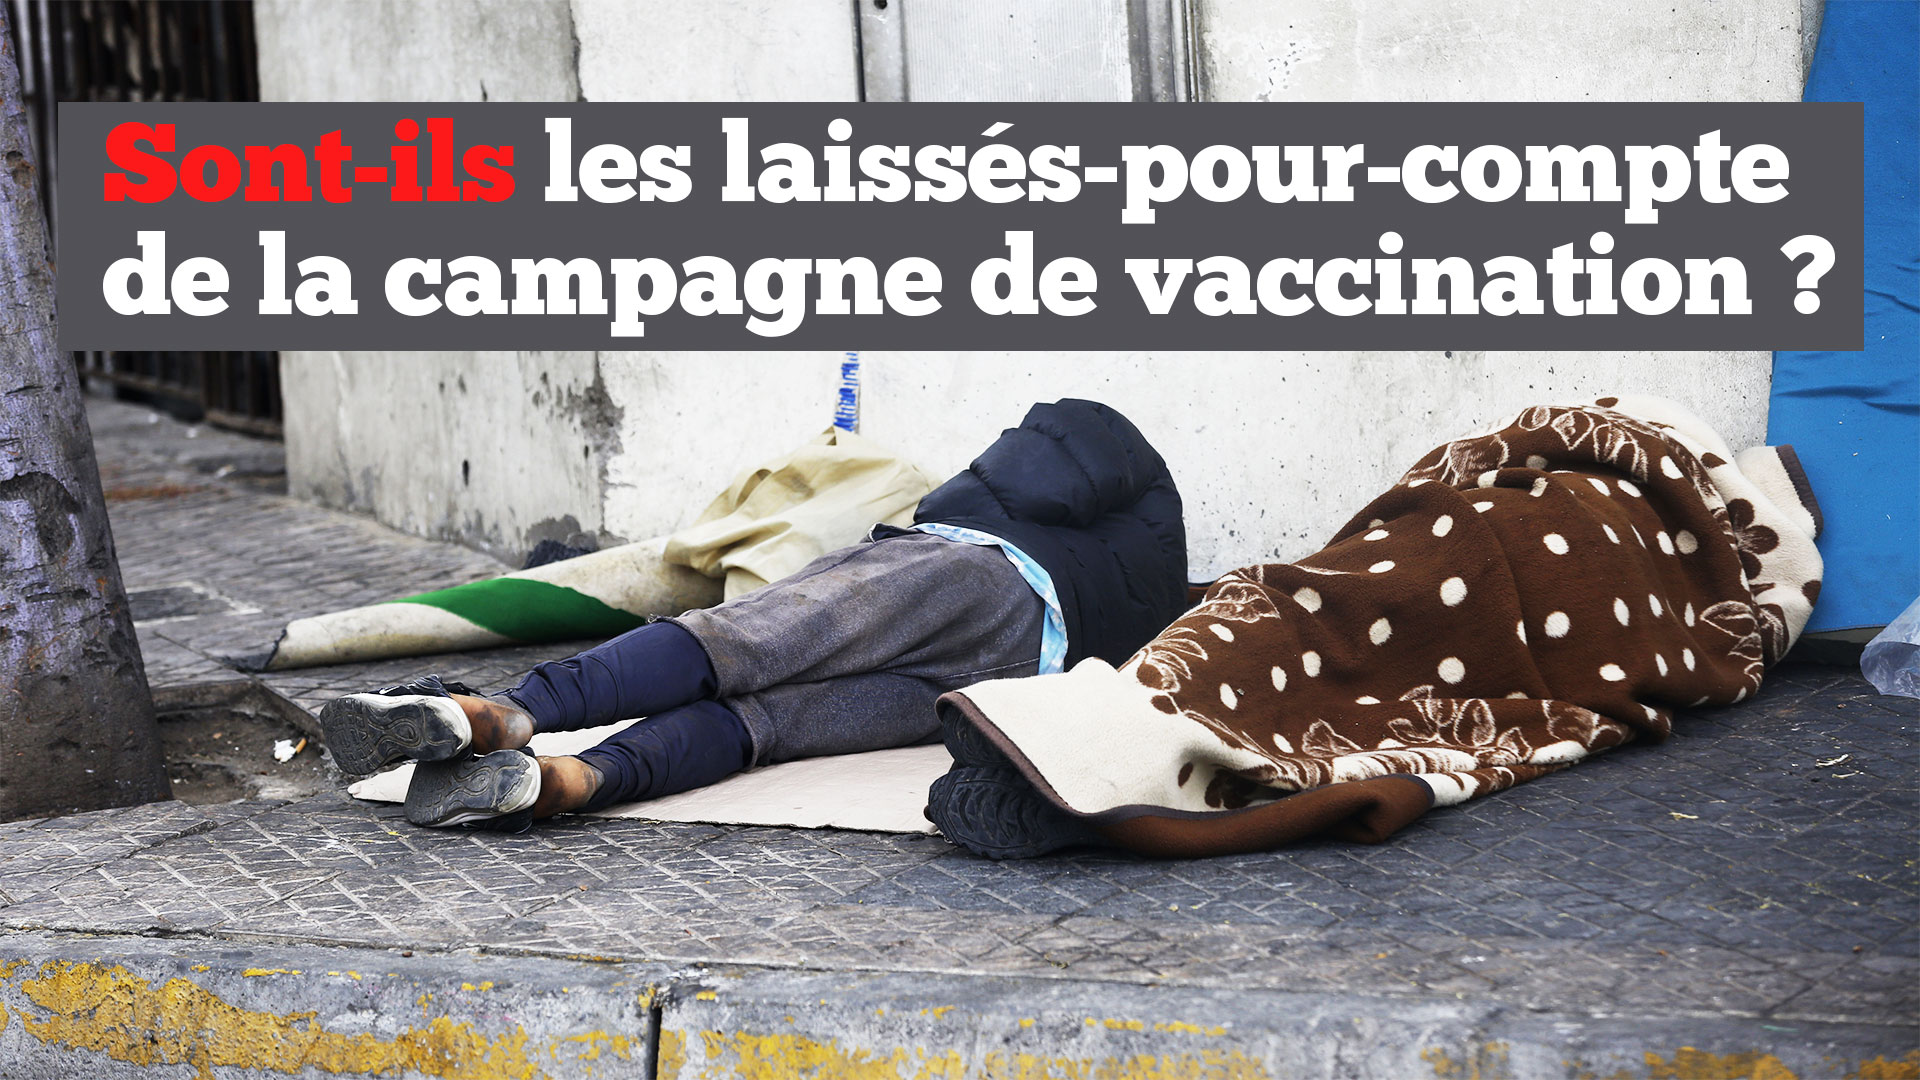 VIDEO. Sans-abris : Les laissés-pour-compte de la campagne de vaccination ?